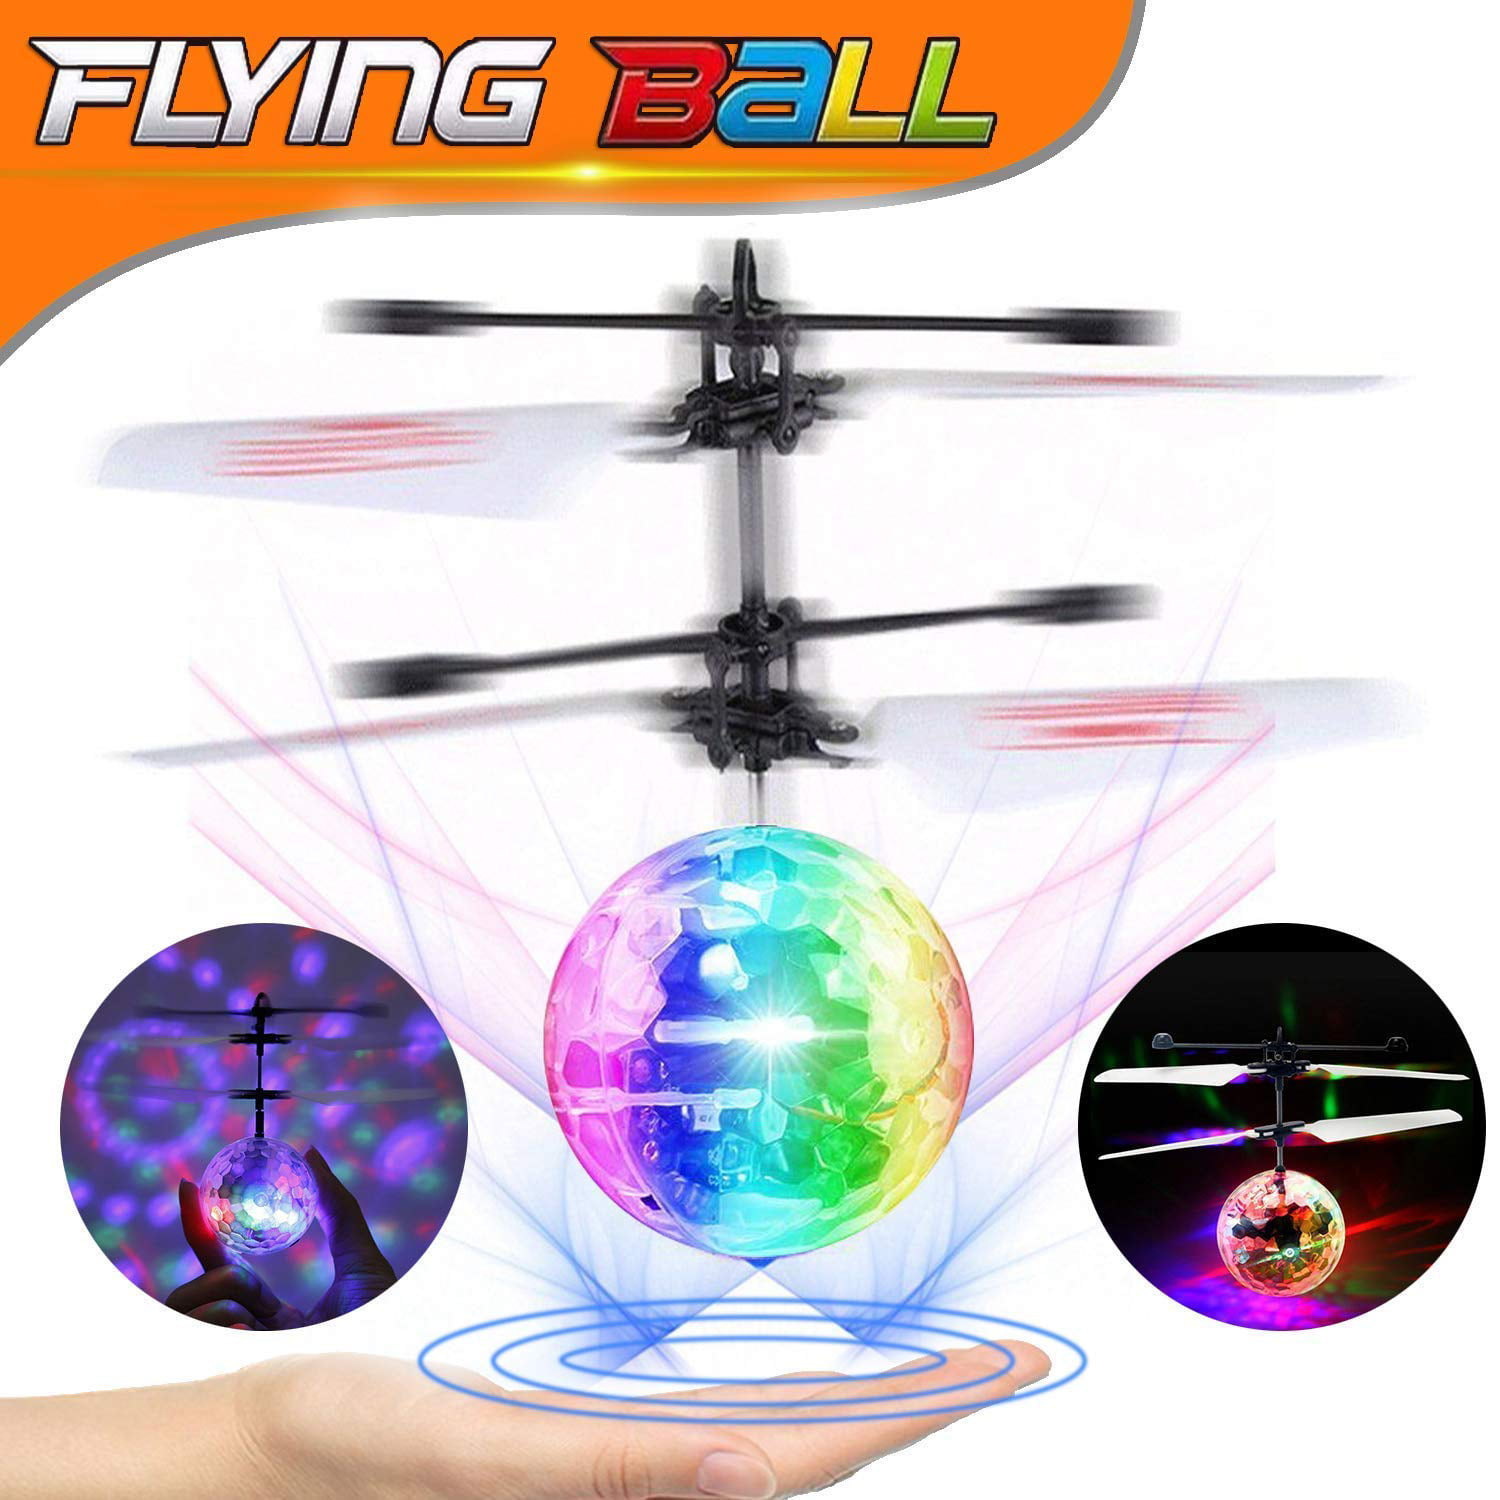 Flying Ball Helicopter Infrared Sensor LED Light Toys Kids Gift Present DU 